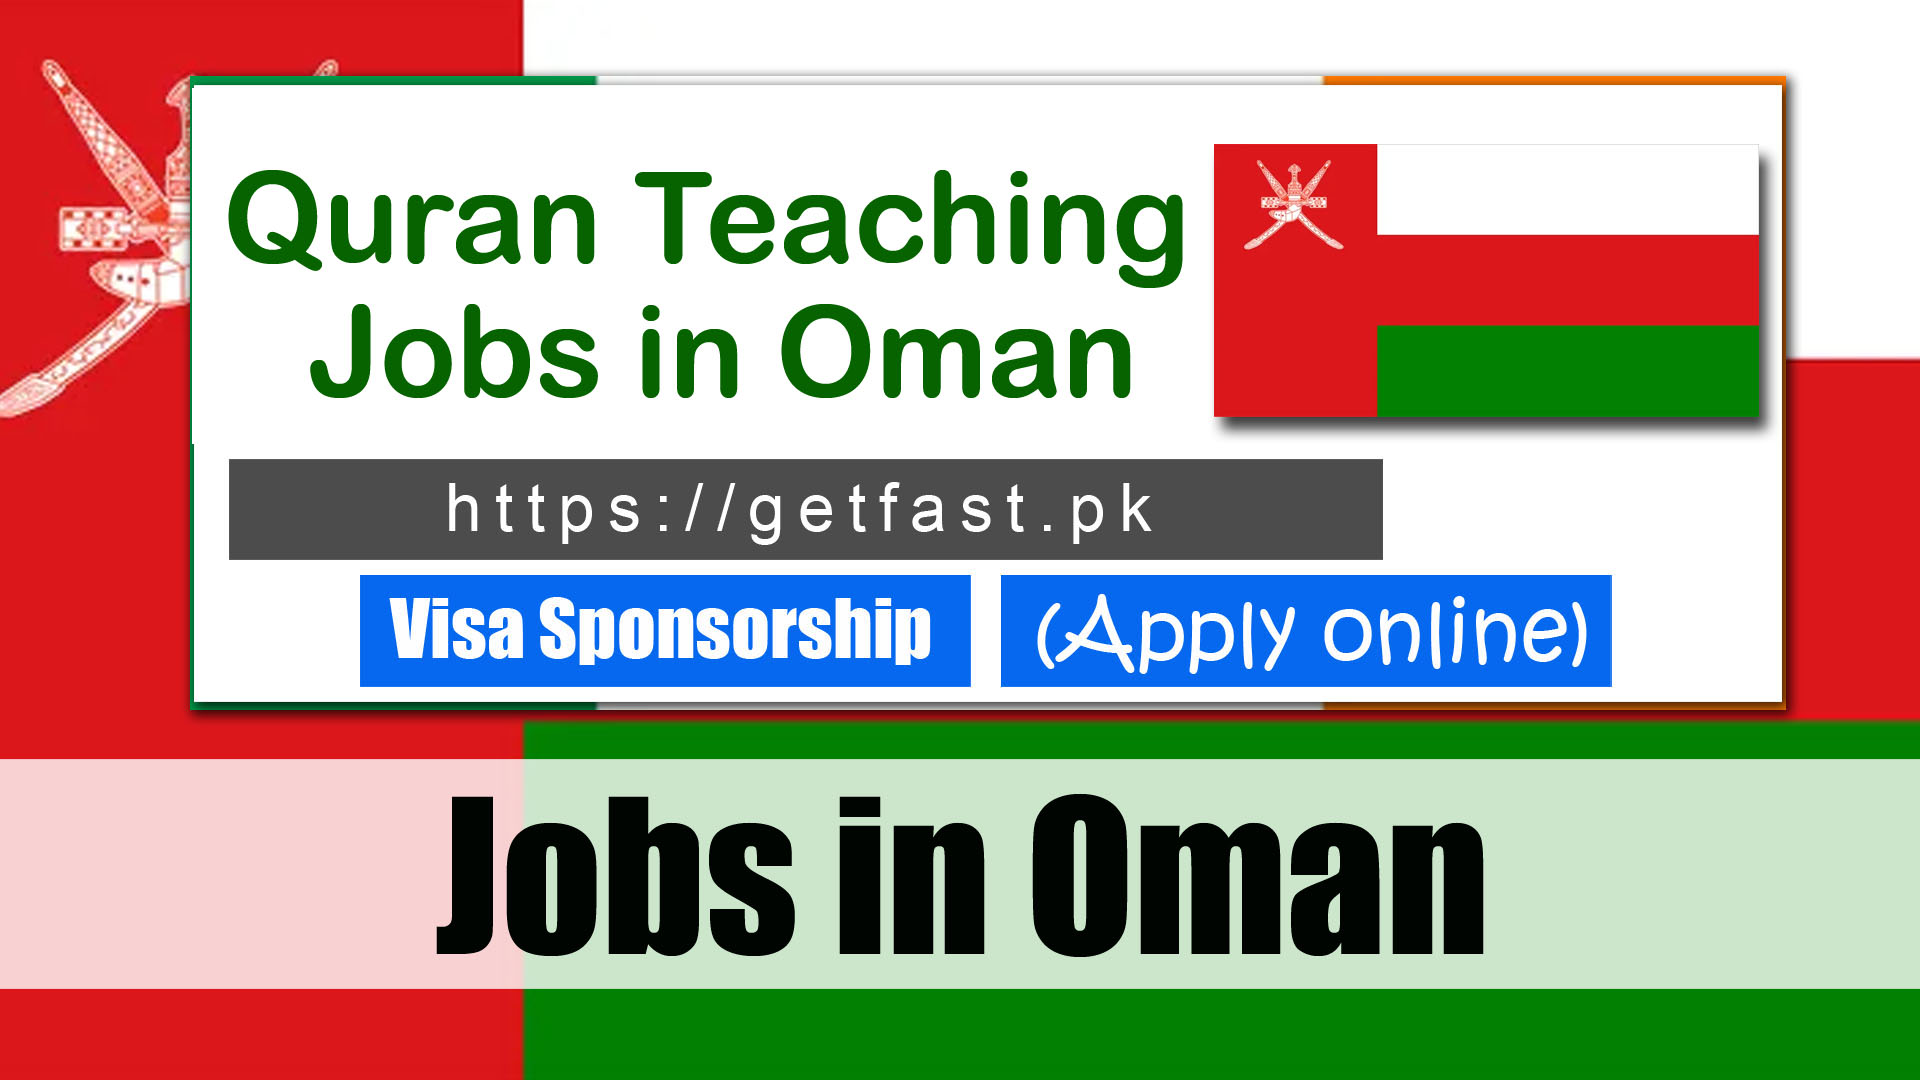 Quran Teaching Jobs